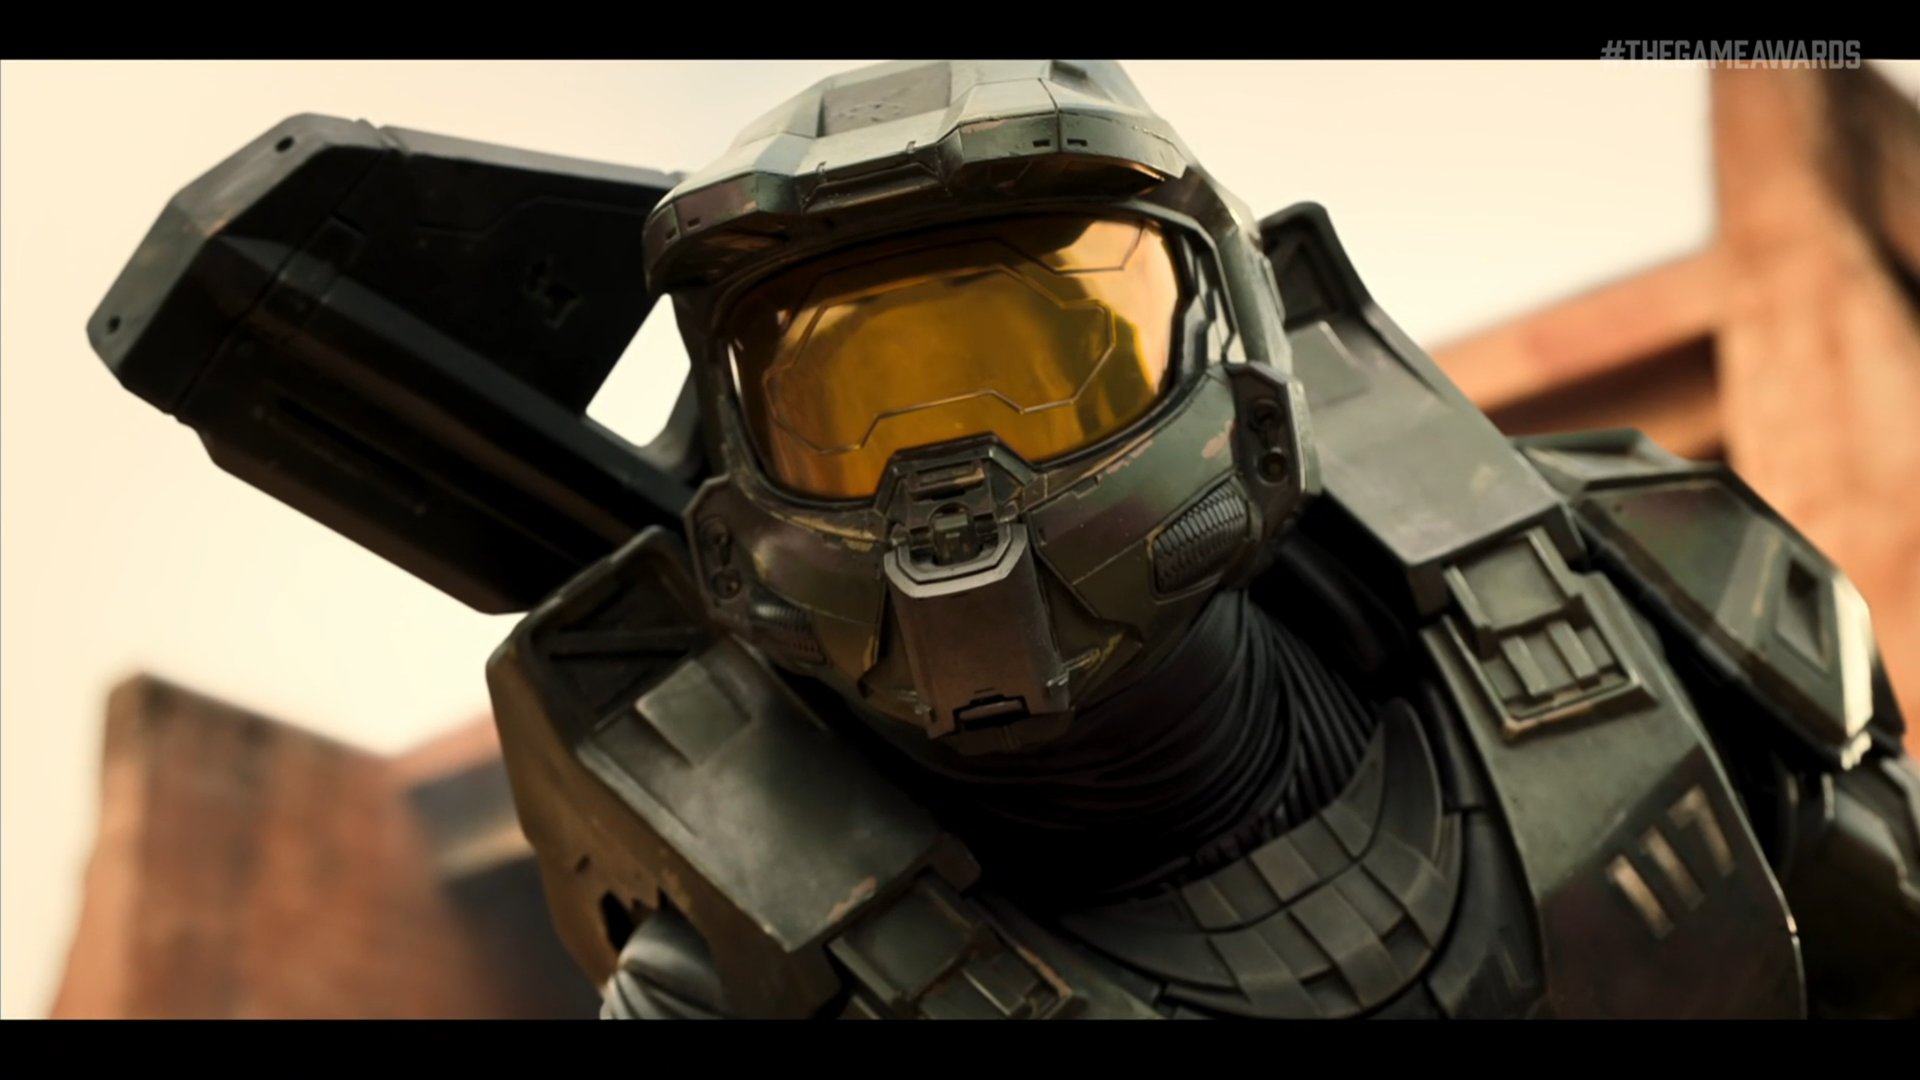 Confirmado! La serie de Halo continua con su segunda temporada el 8 de  febrero – Generacion Xbox